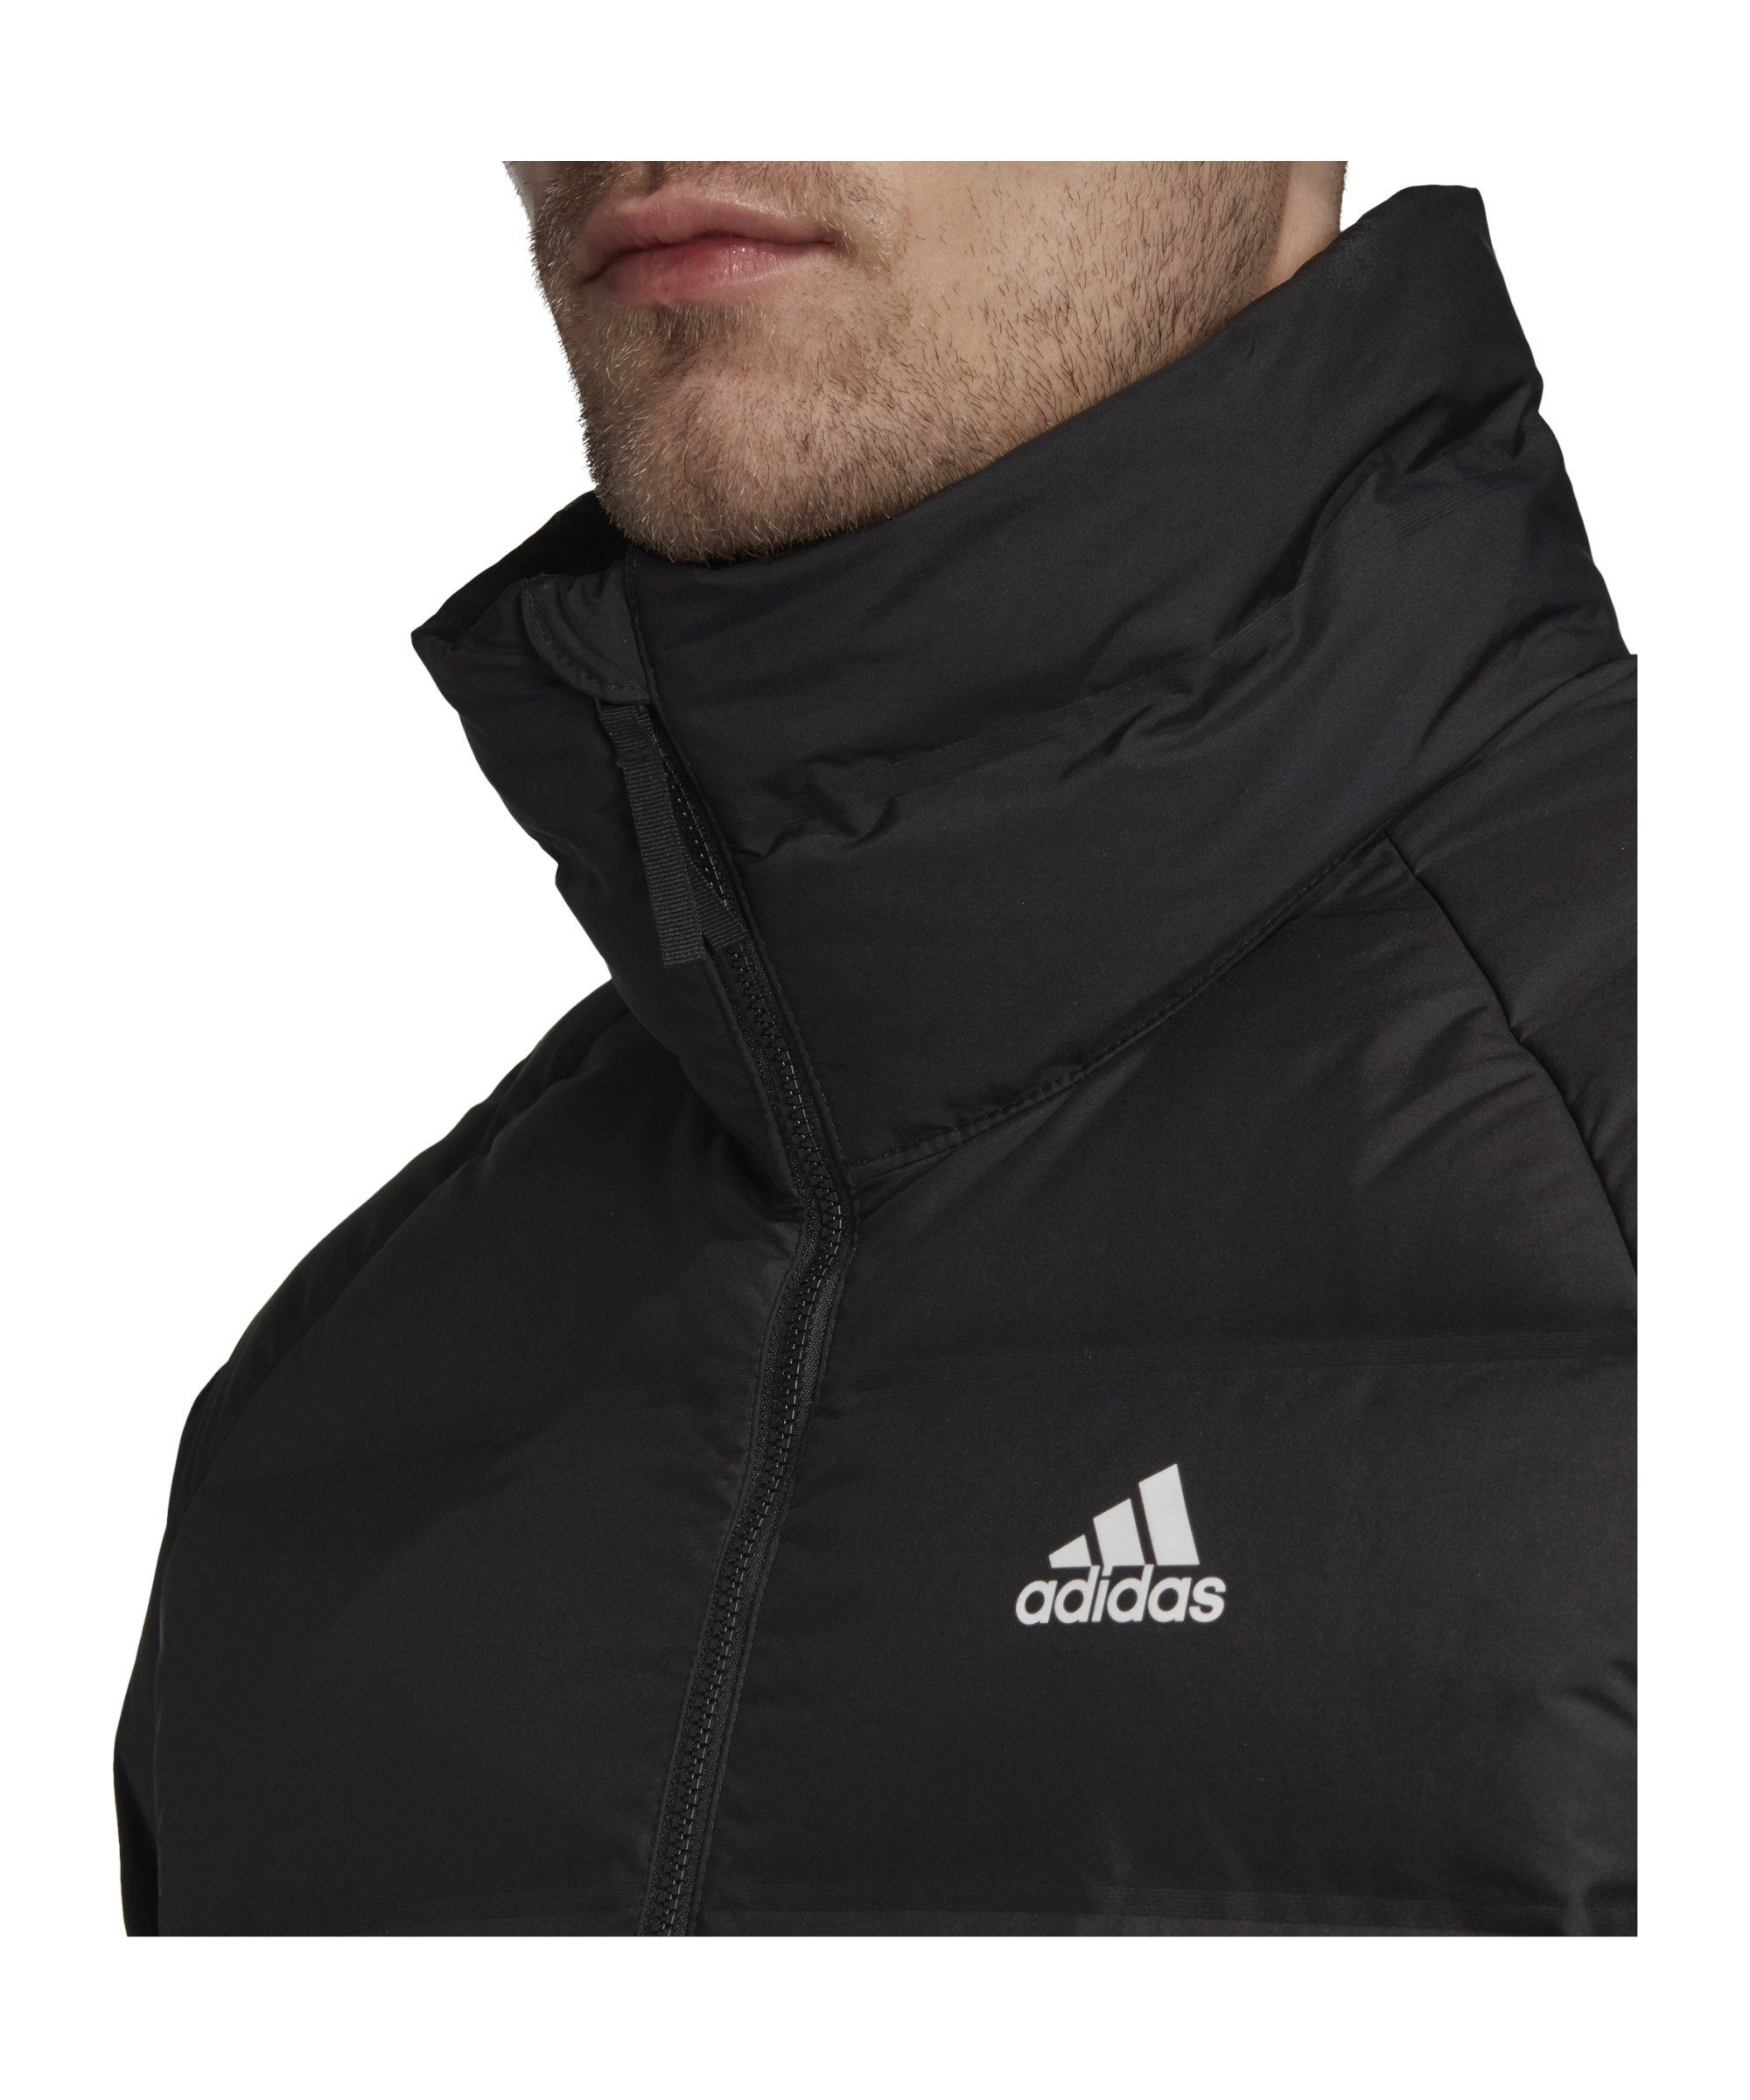 Sweatjacke Jacke schwarz Helionic Performance adidas Mid